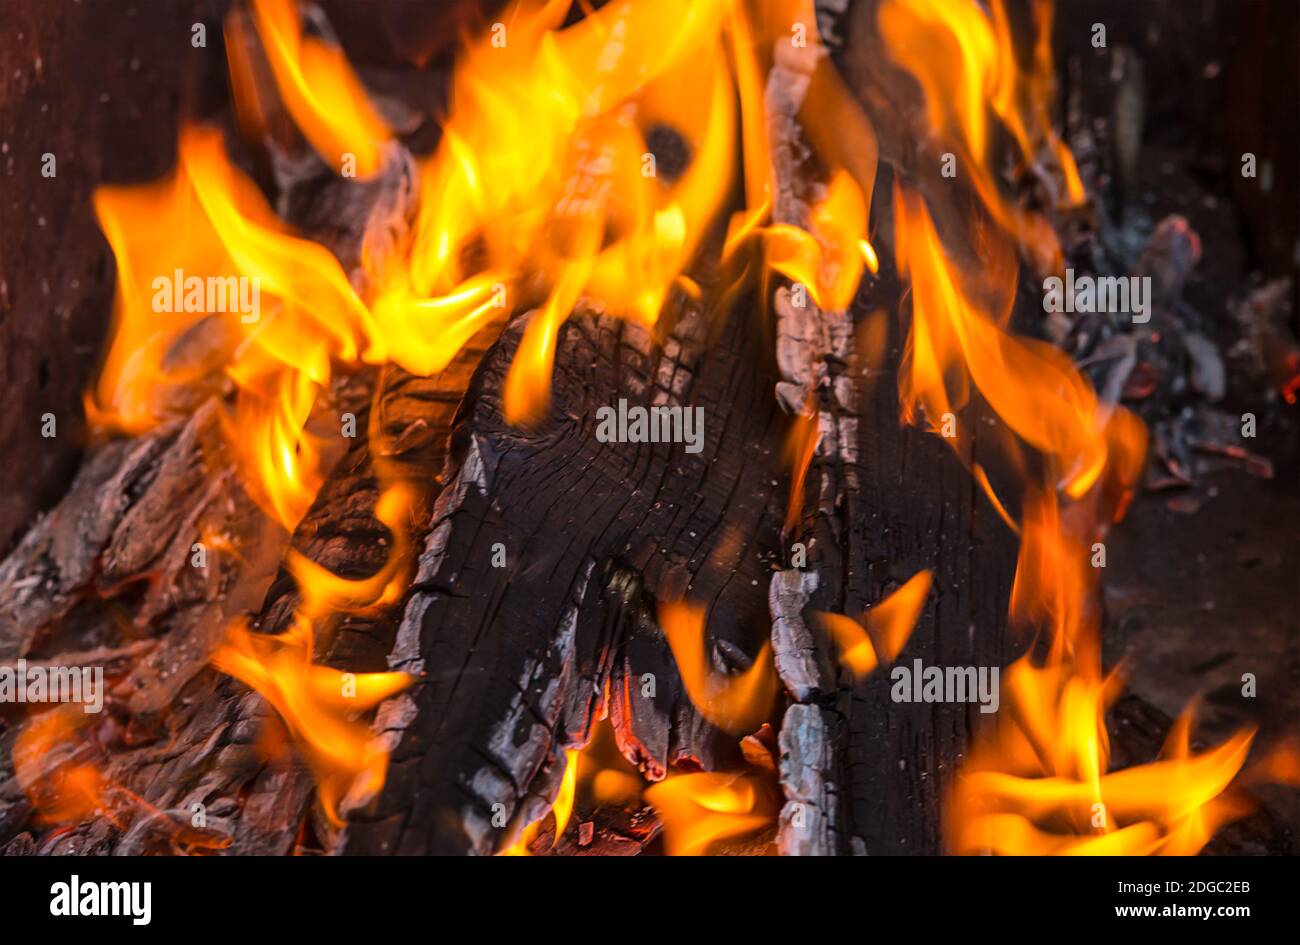 La fiamma arancione perfora i pannelli bruciati fuoco luminoso da vicino Foto Stock